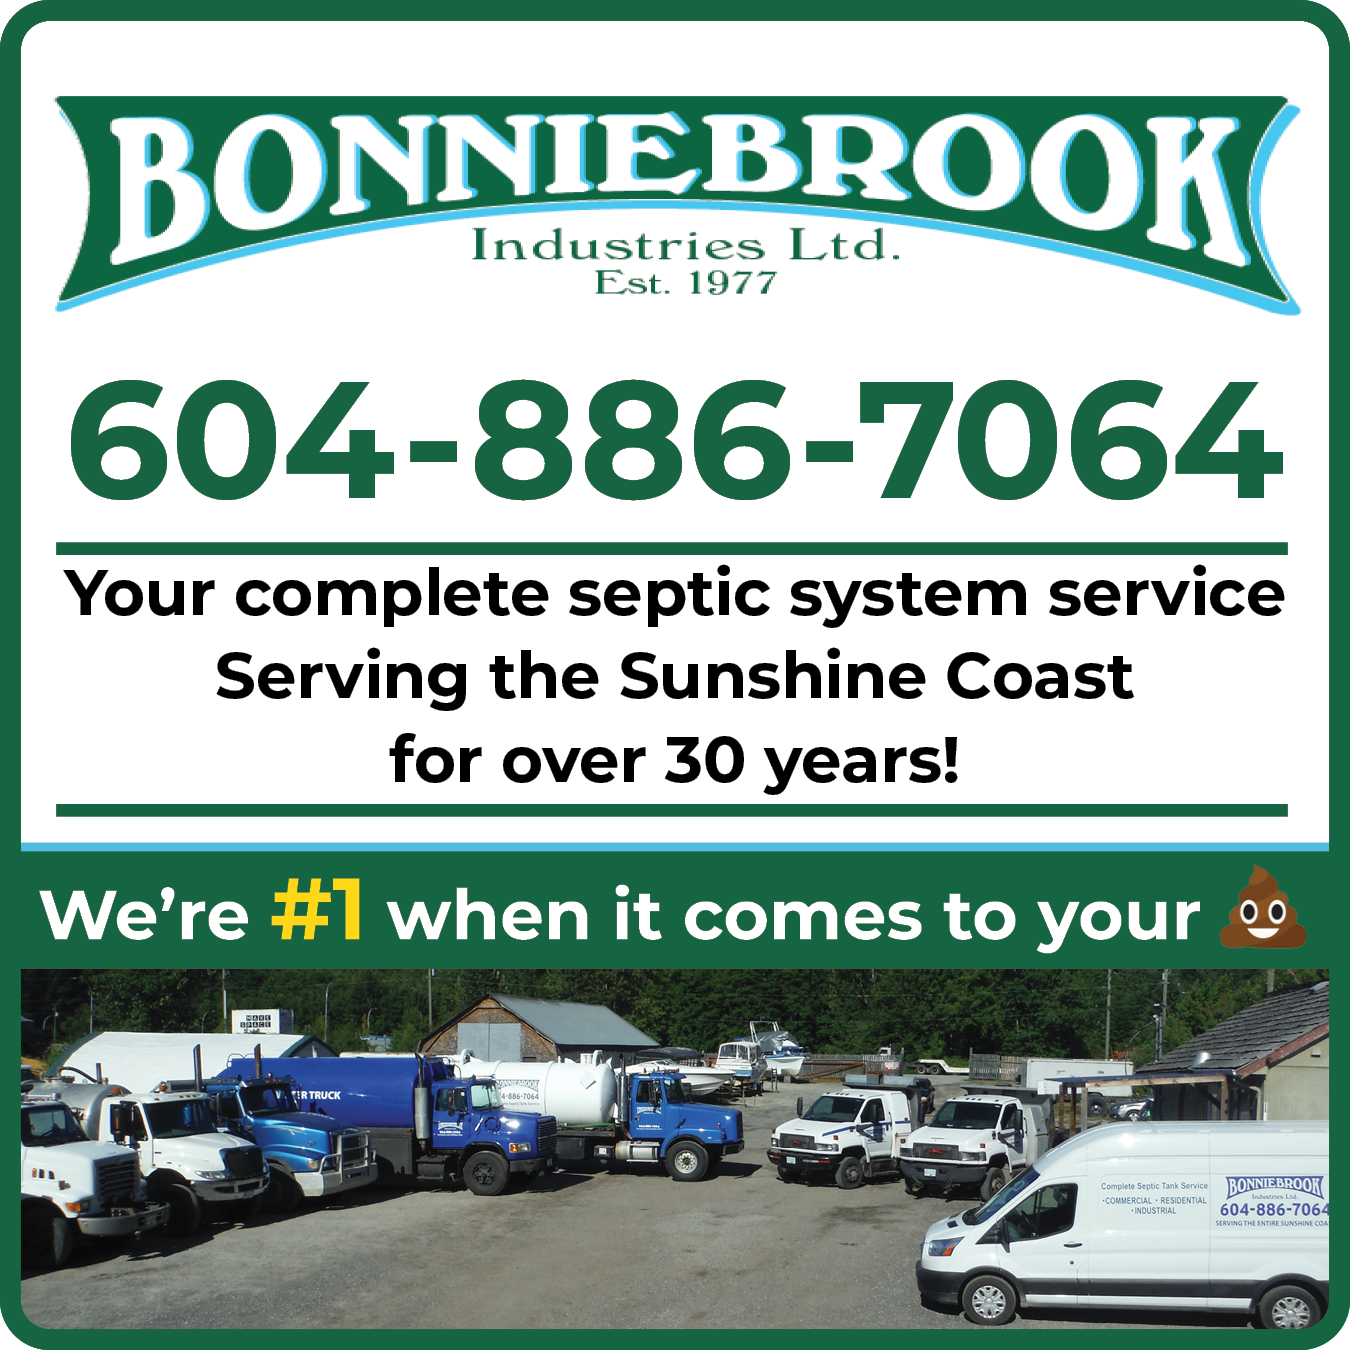 Bonniebrook Industries Ltd